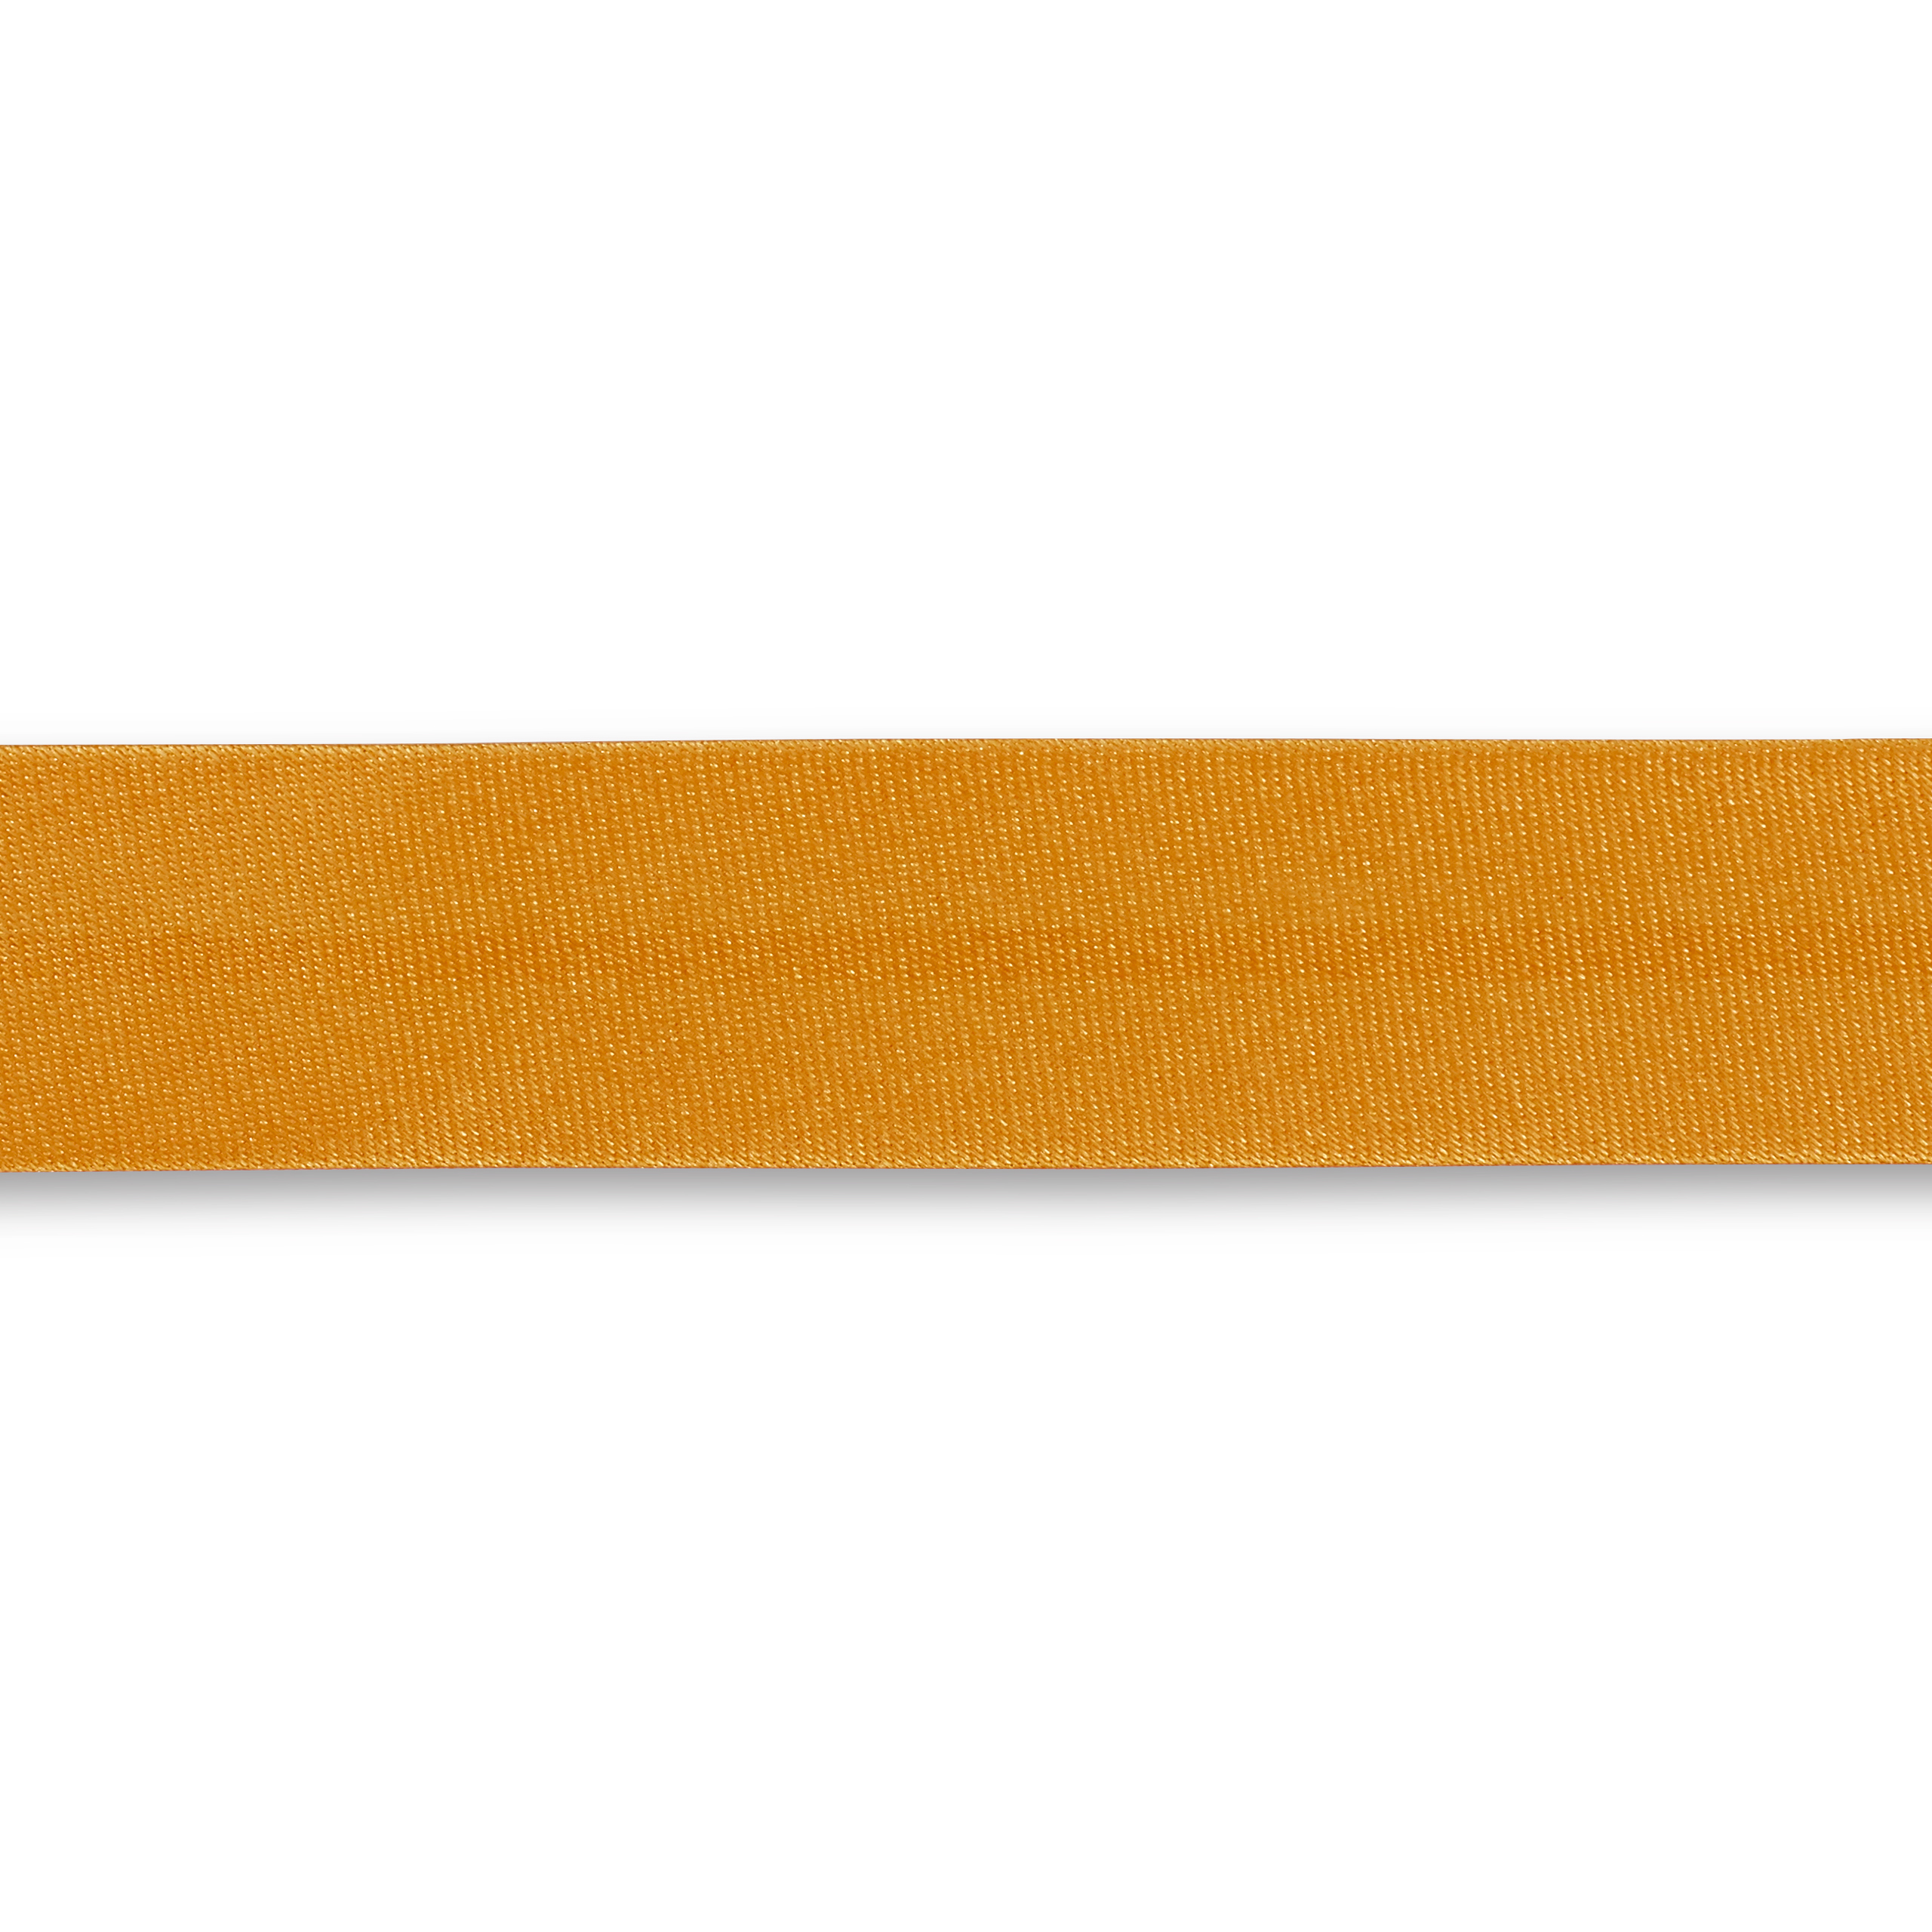 Schrägband Duchesse 40/20 mm sonnengelb, Meterware, Einfassband, Satin-Schrägband 